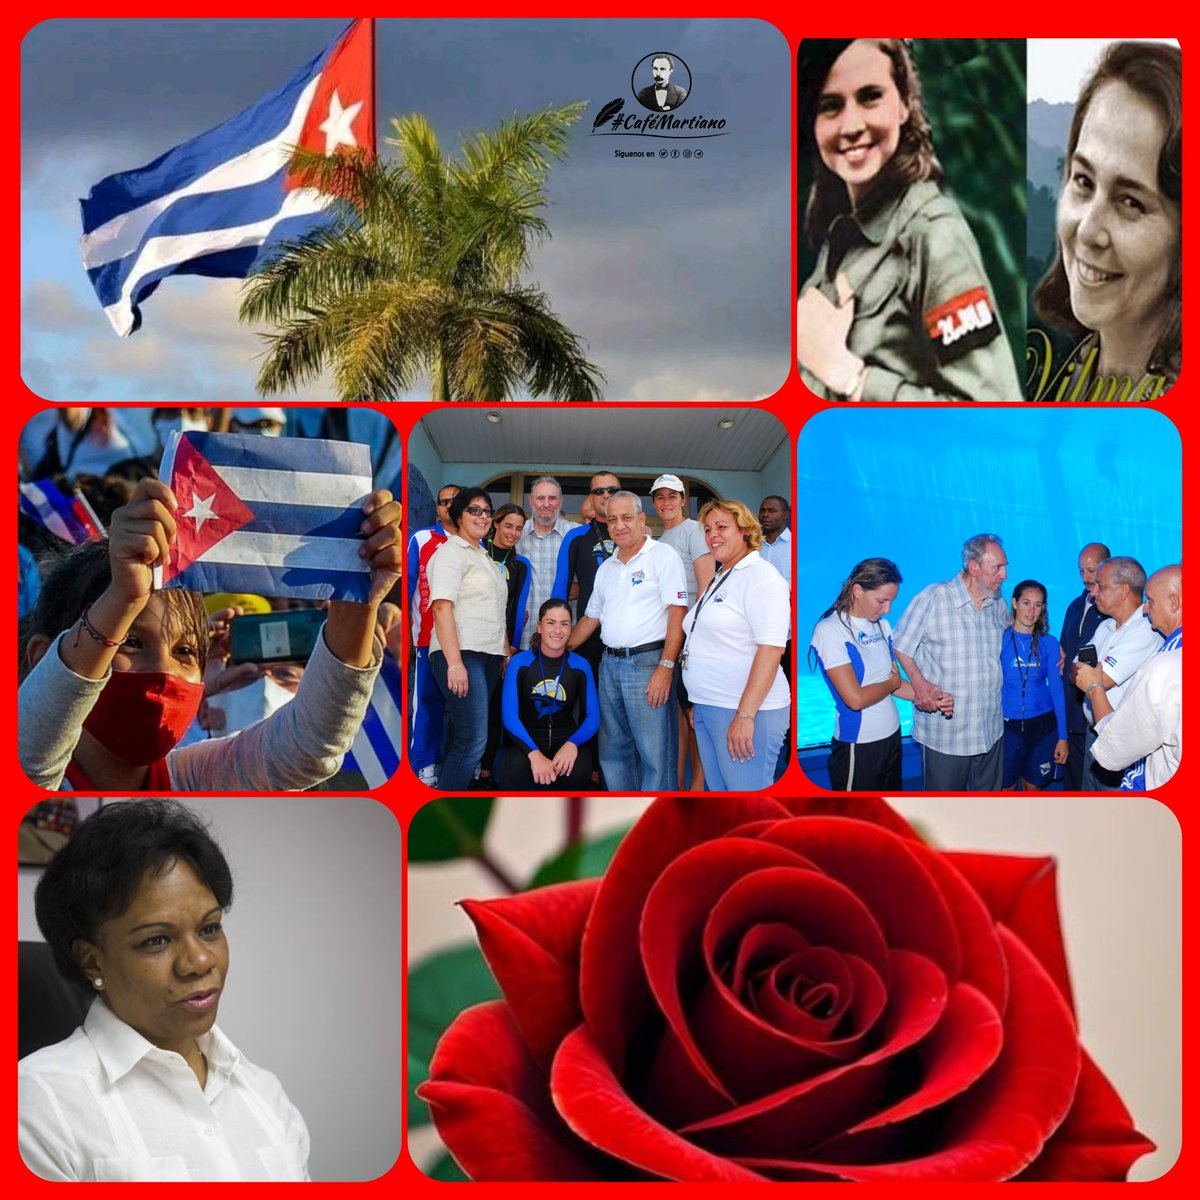 Buen día #CaféMartiano en homenaje a las mujeres cubanas🇨🇺 👉En el pensamiento martiano y en el de Fidel, en la actuación de ambos no han faltado frases y acciones que resalten la participación de las mujeres en la Revolución y en la sociedad. #MujeresEnRevolución #CubaEsAmor